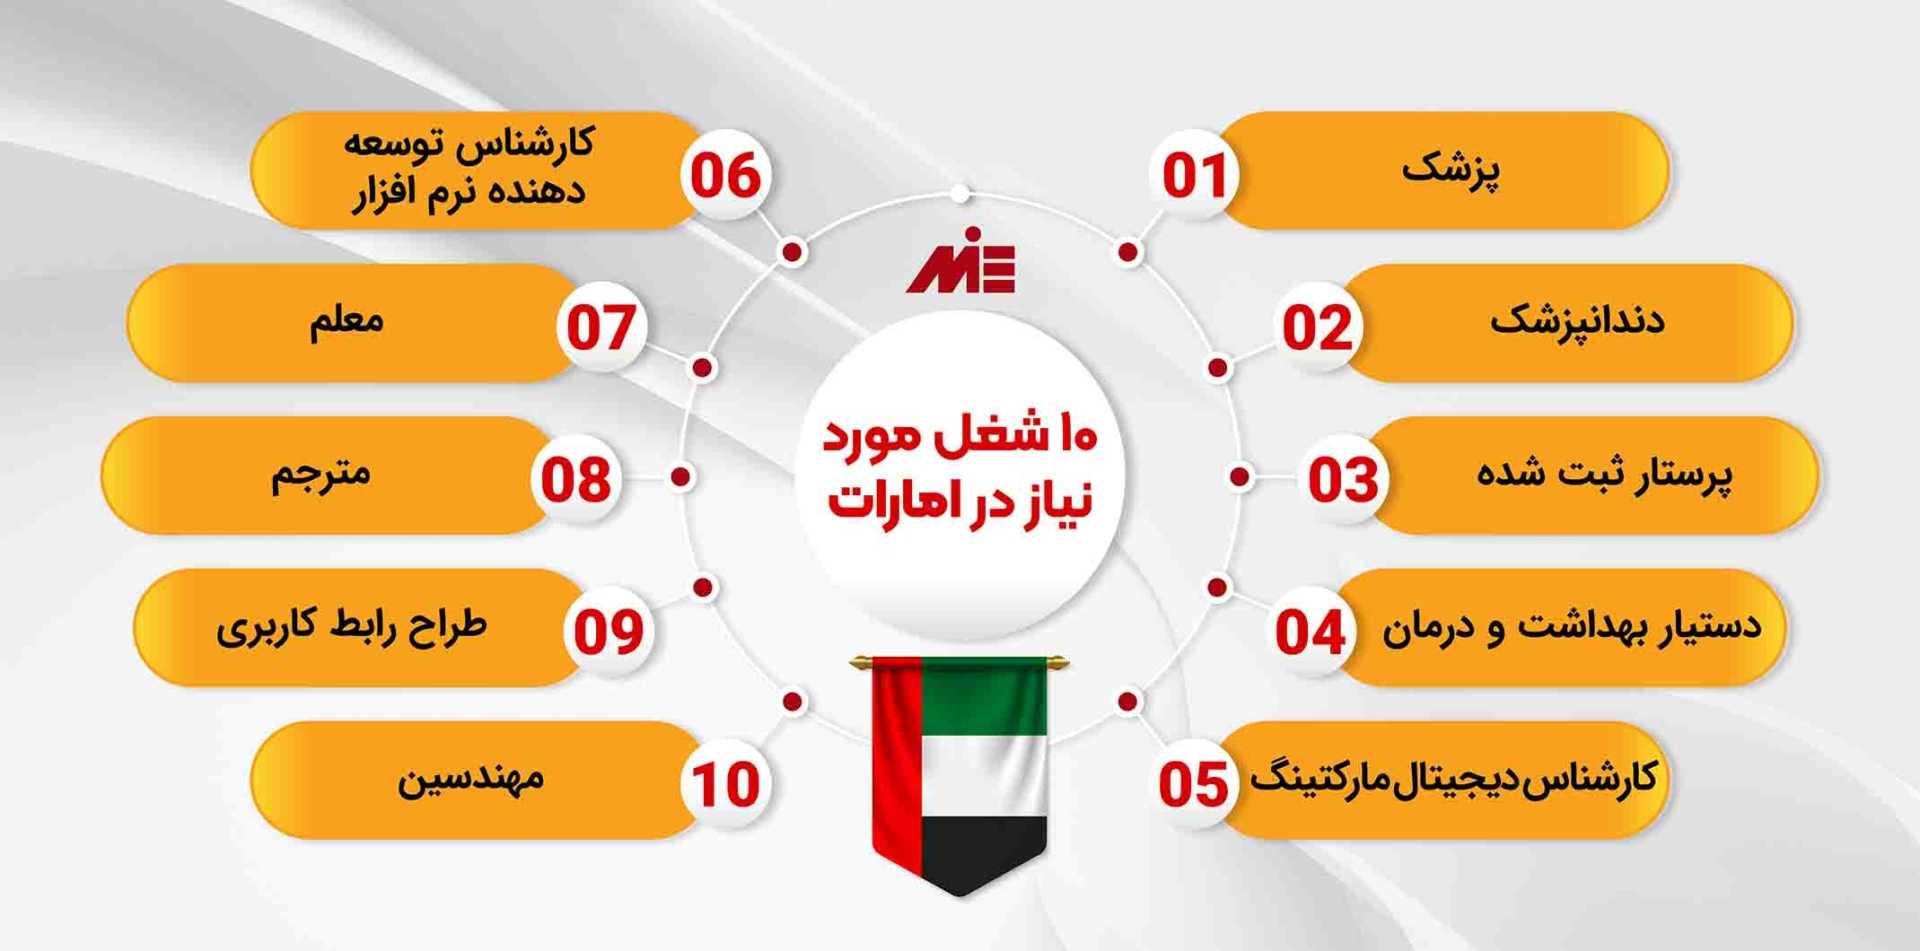 10 شغل مورد نیاز در امارات
